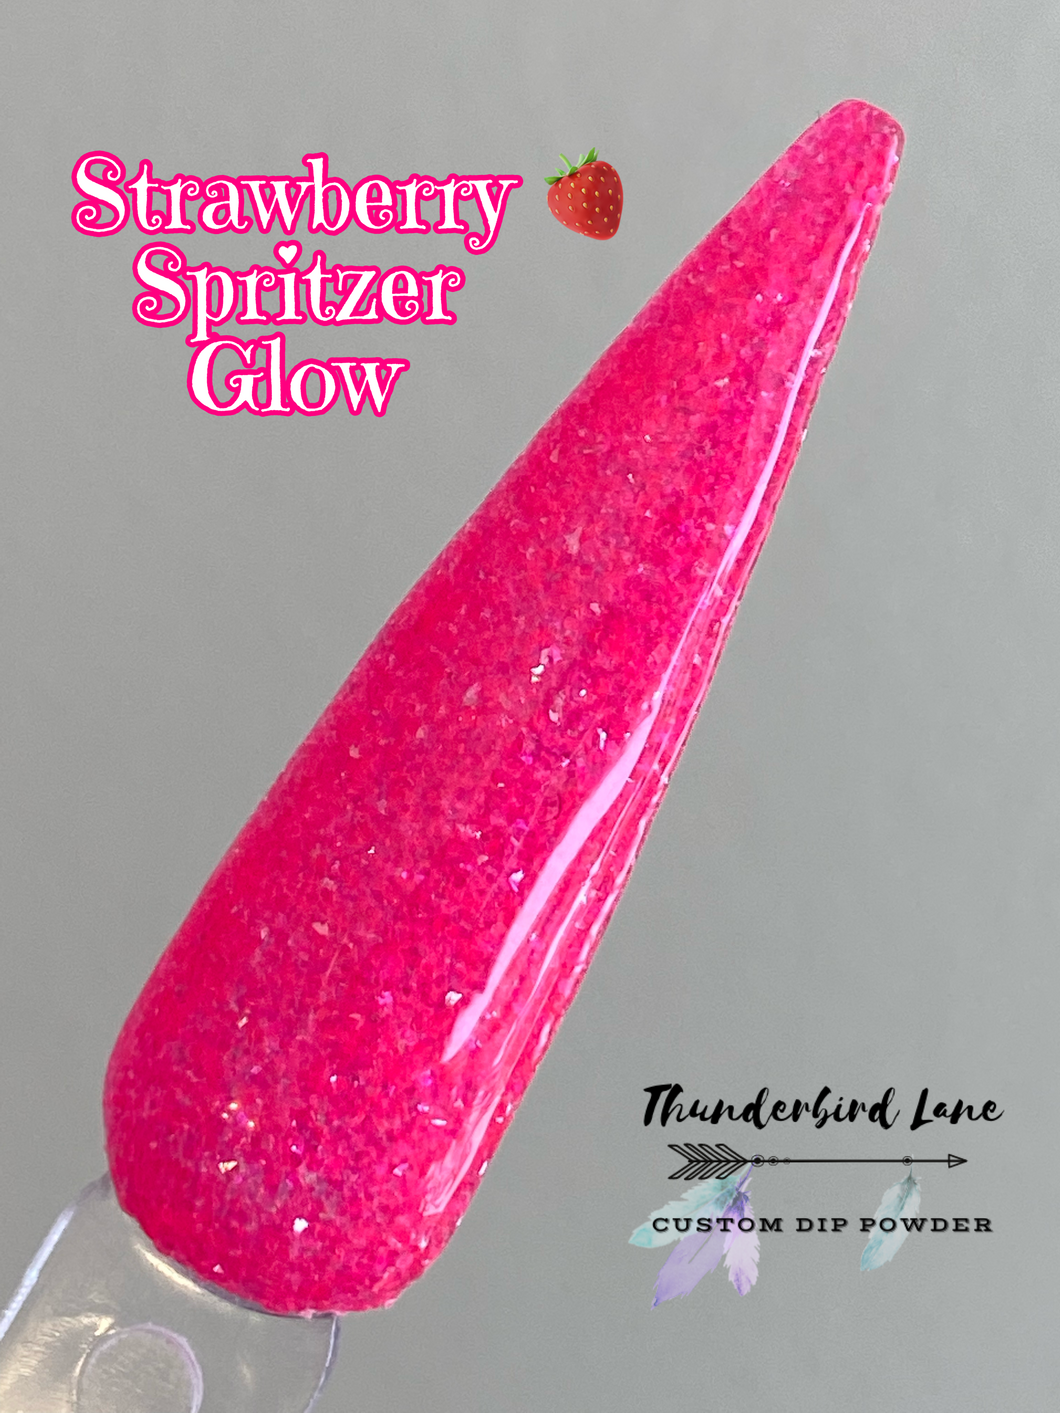 Strawberry Spritzer Glow